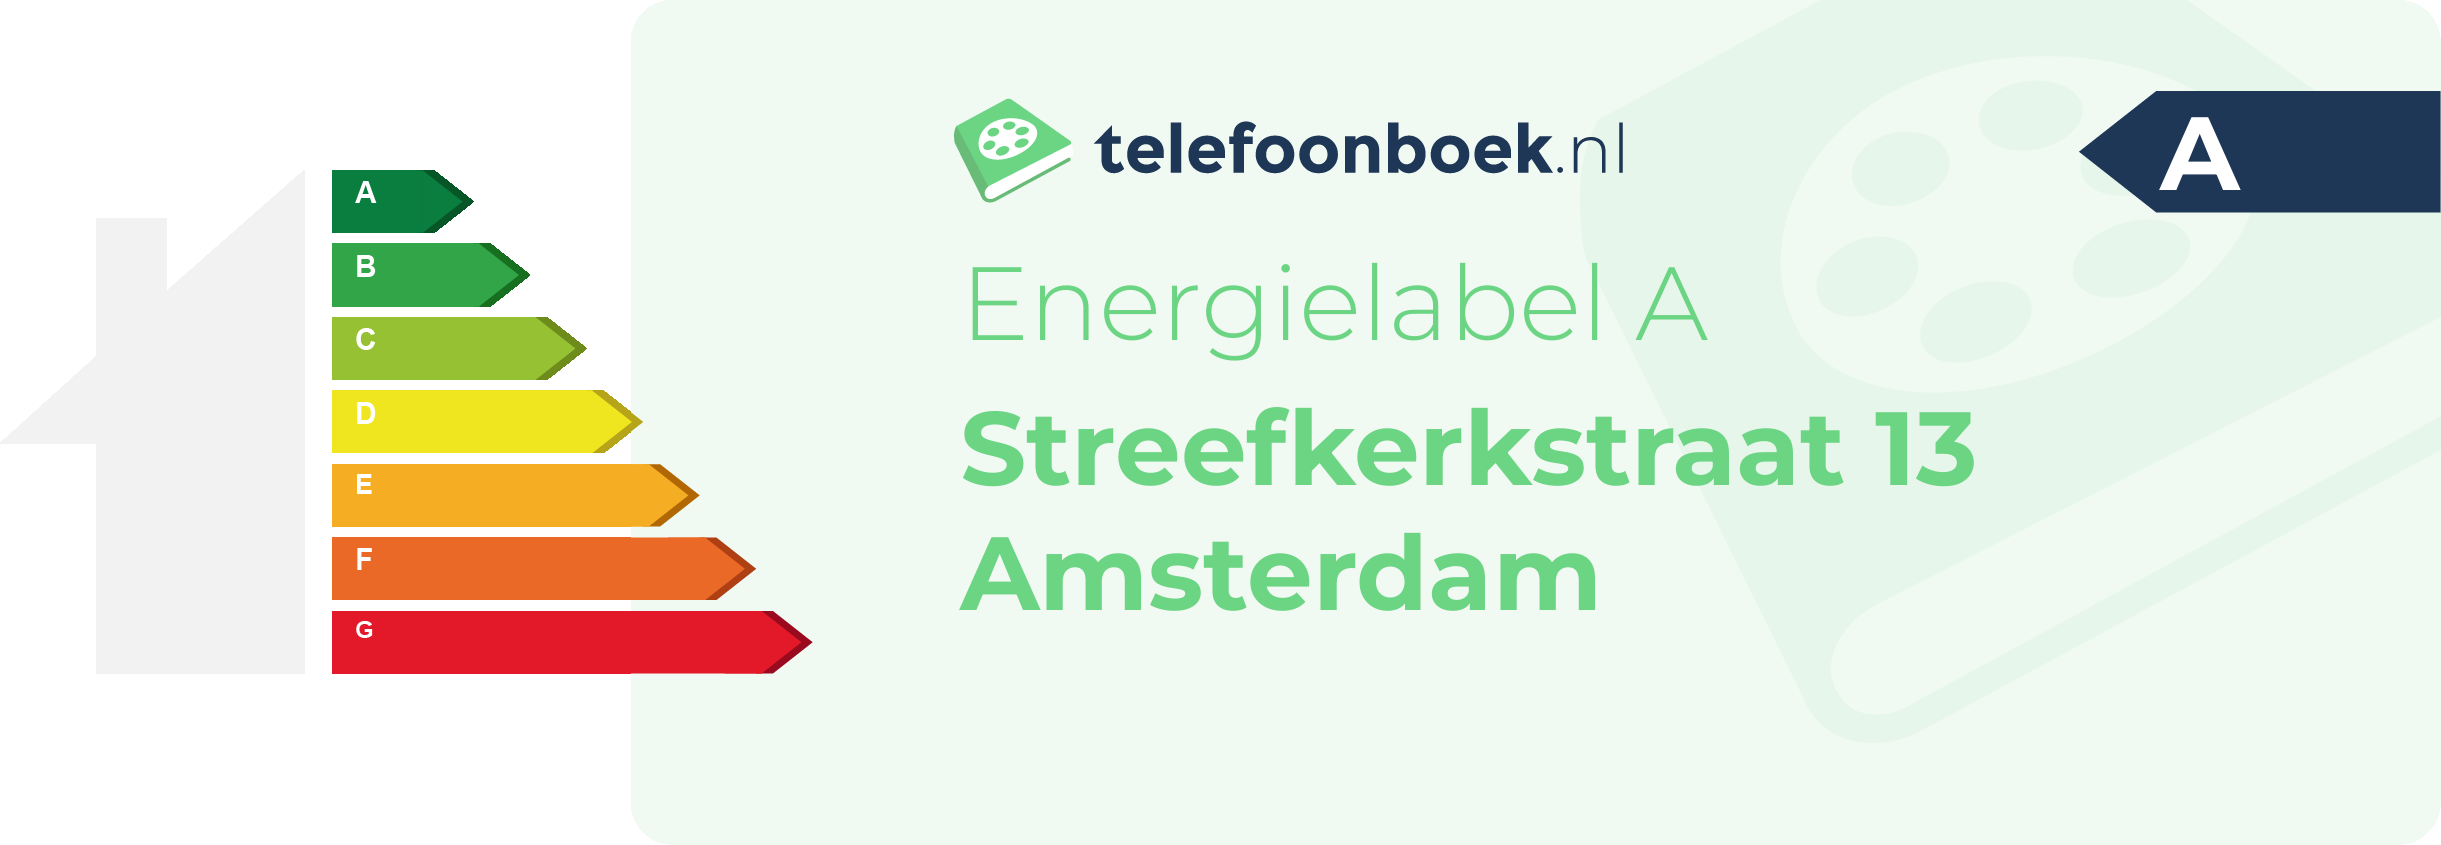 Energielabel Streefkerkstraat 13 Amsterdam